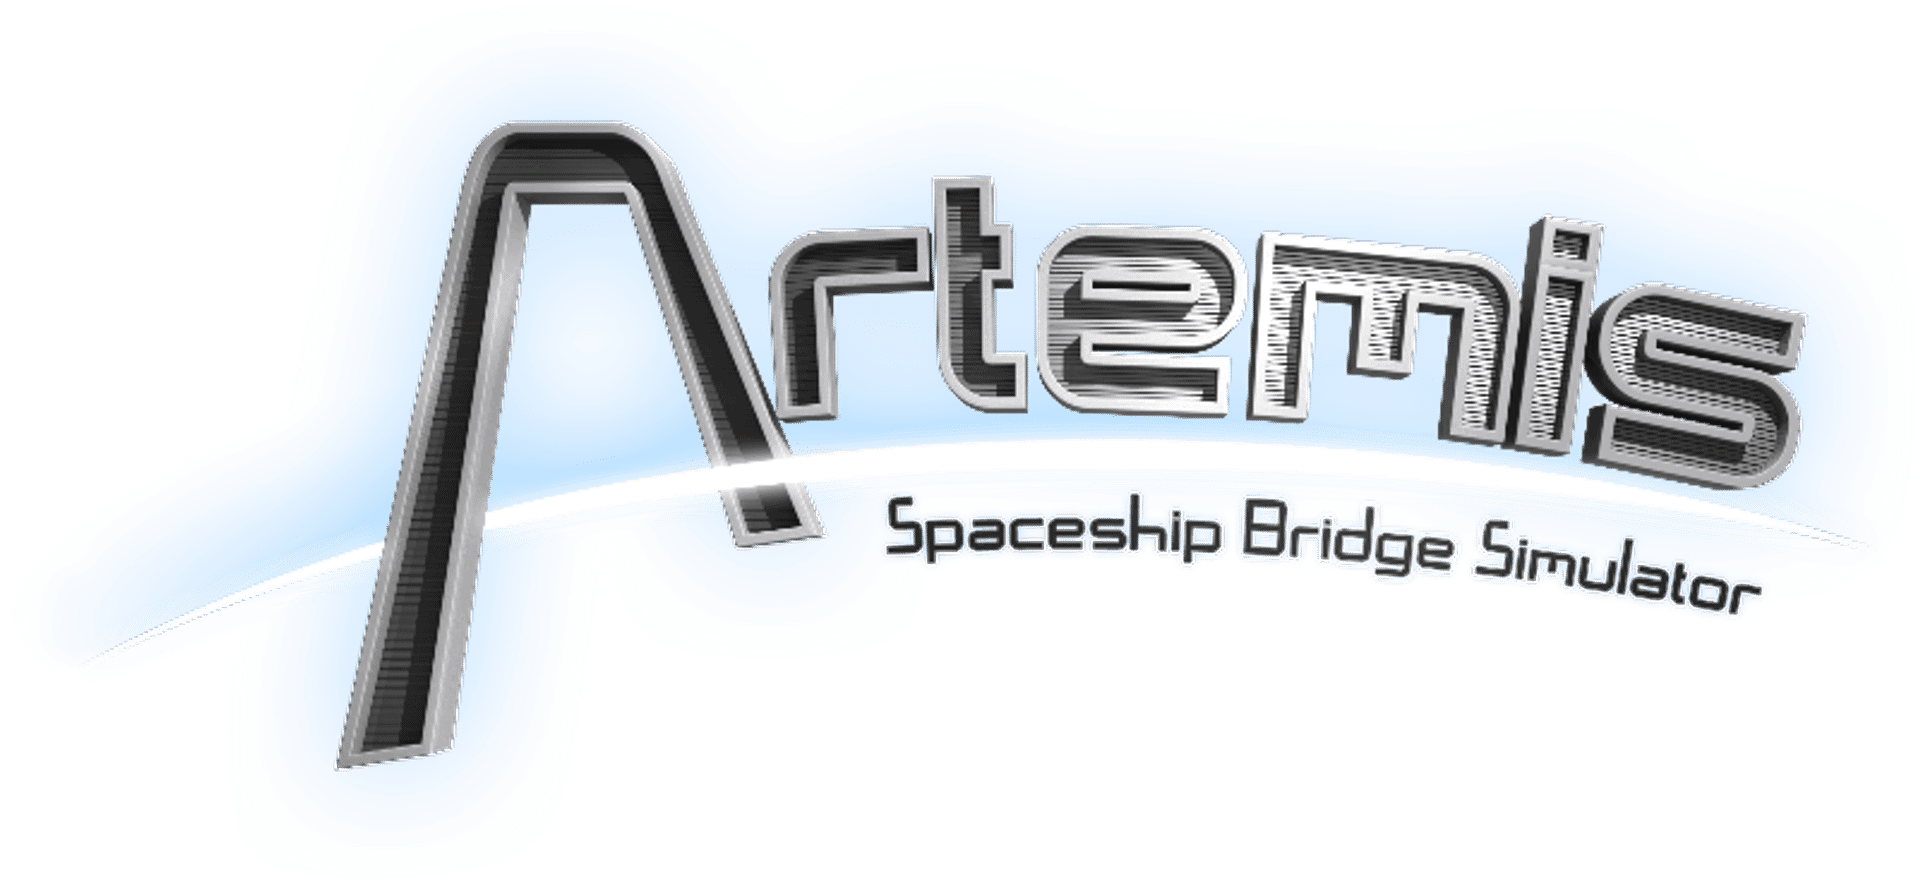 Artemis - Spaceship Bridge Simulator